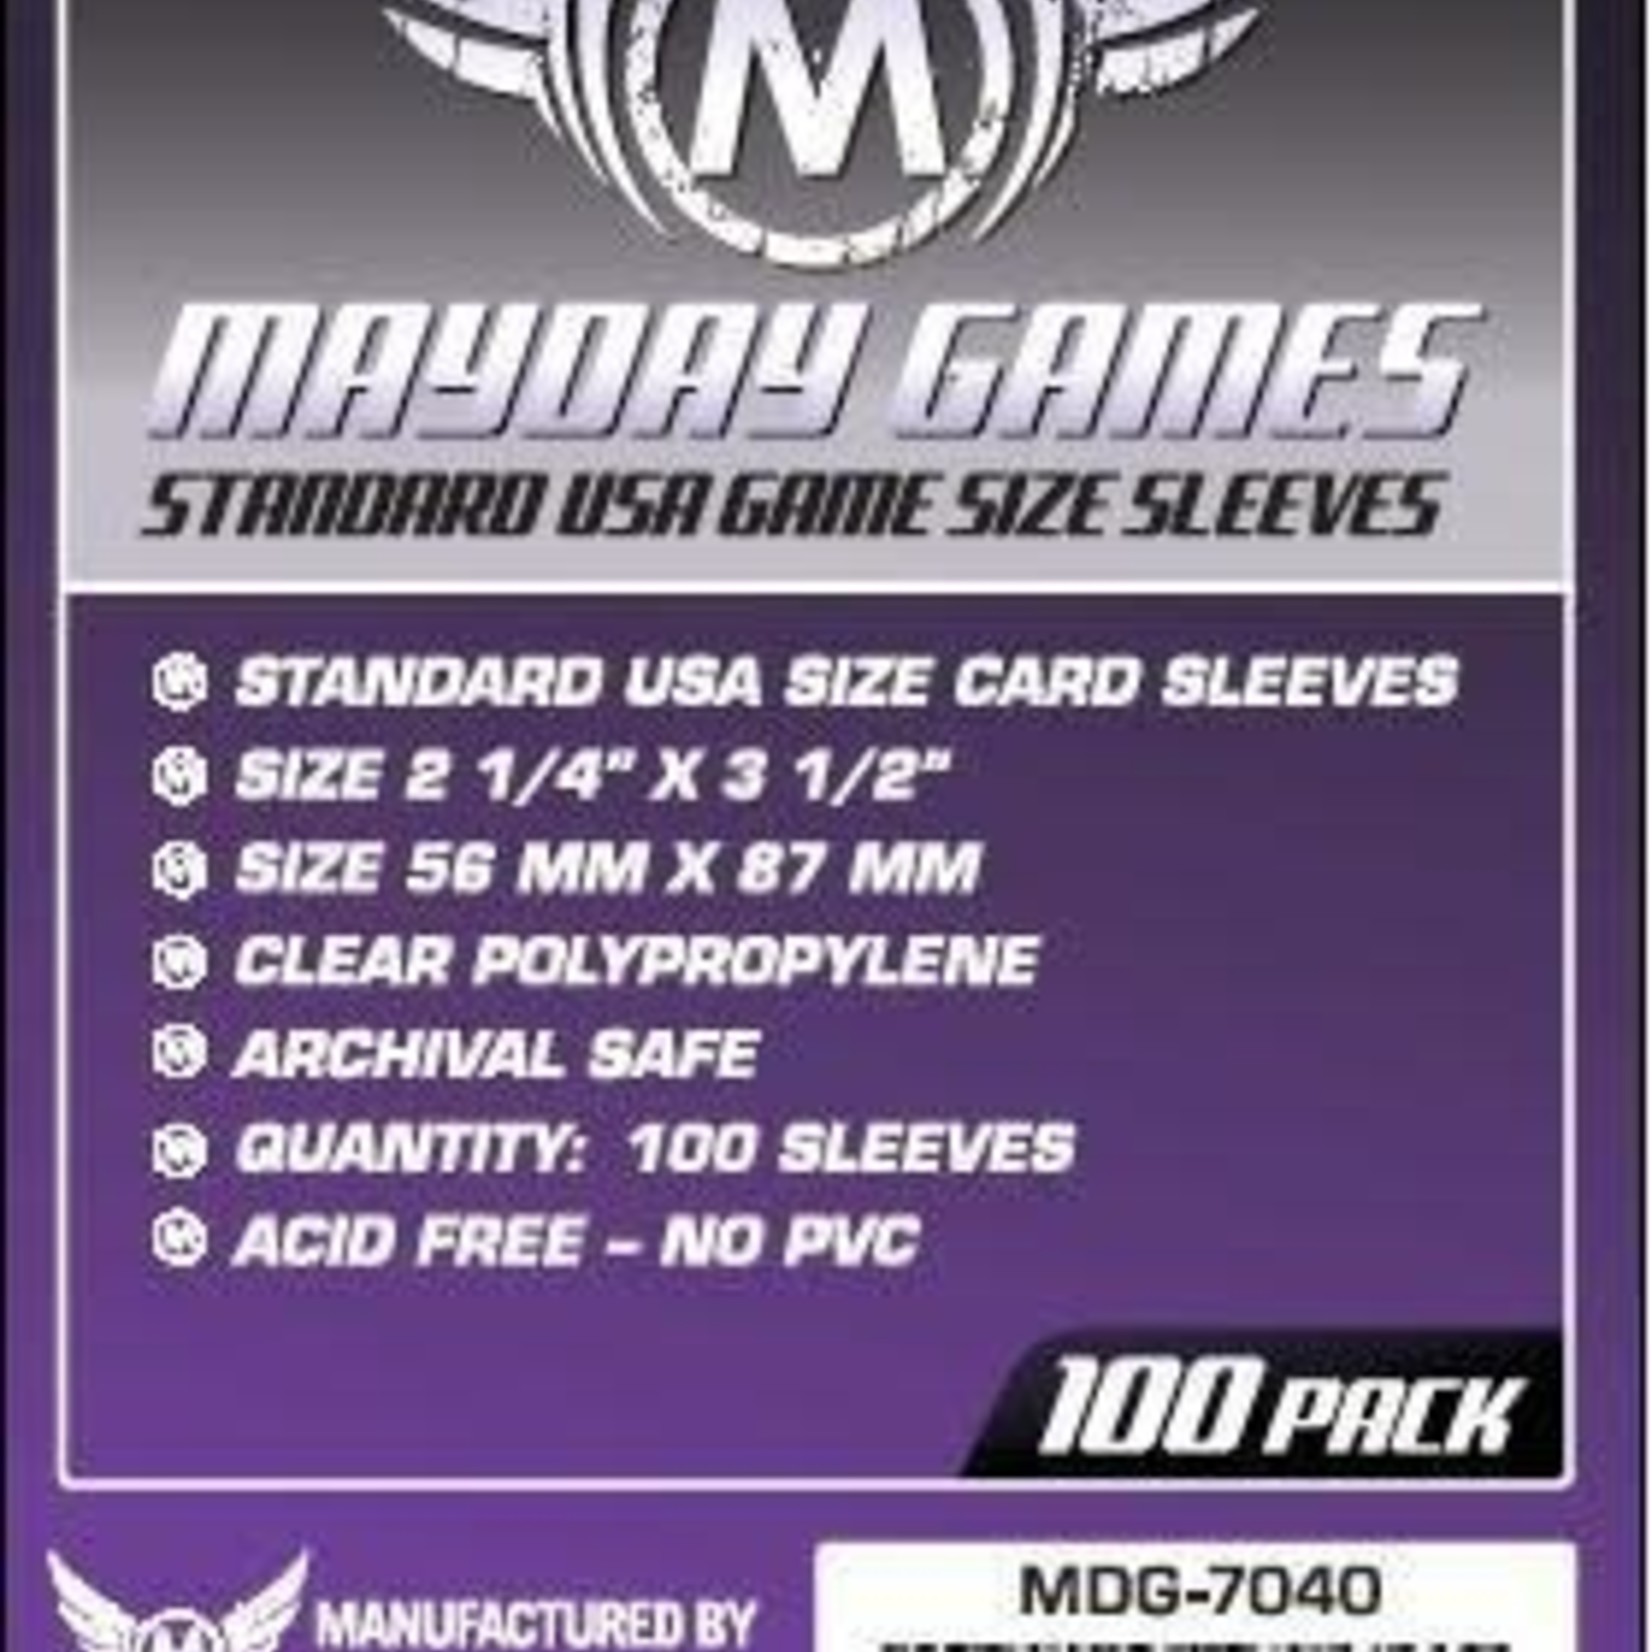 Mayday Games Mayday Sleeves 56x87mm